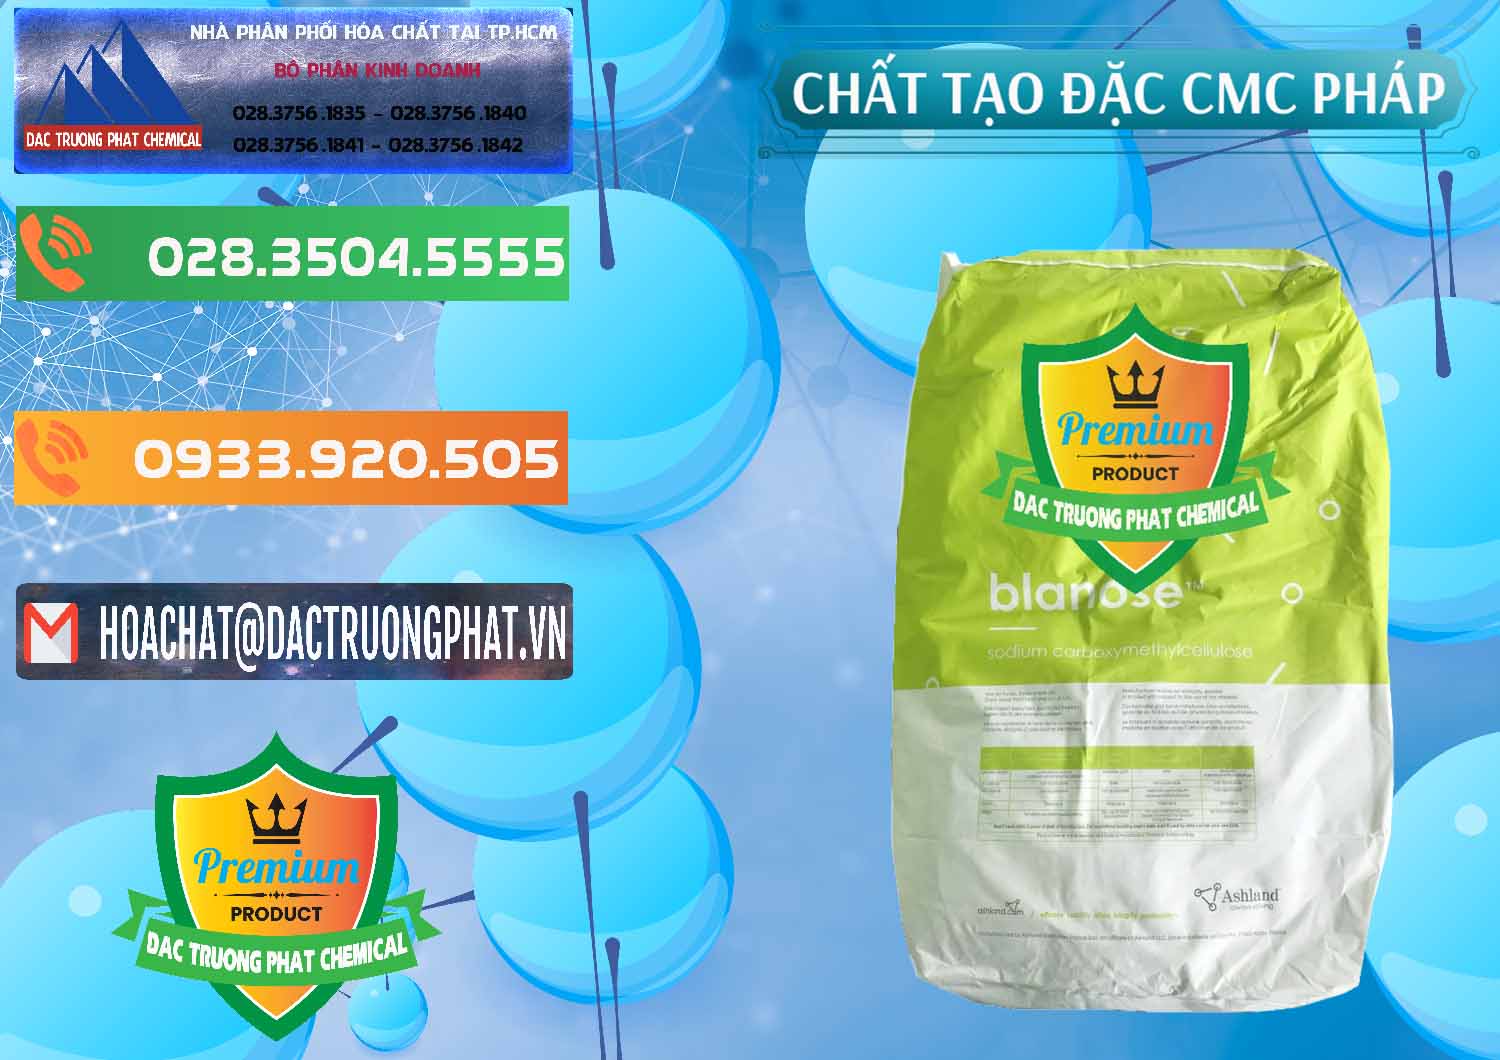 Nơi bán Chất Tạo Đặc CMC - Carboxyl Methyl Cellulose Pháp France - 0394 - Đơn vị phân phối và bán hóa chất tại TP.HCM - hoachatxulynuoc.com.vn